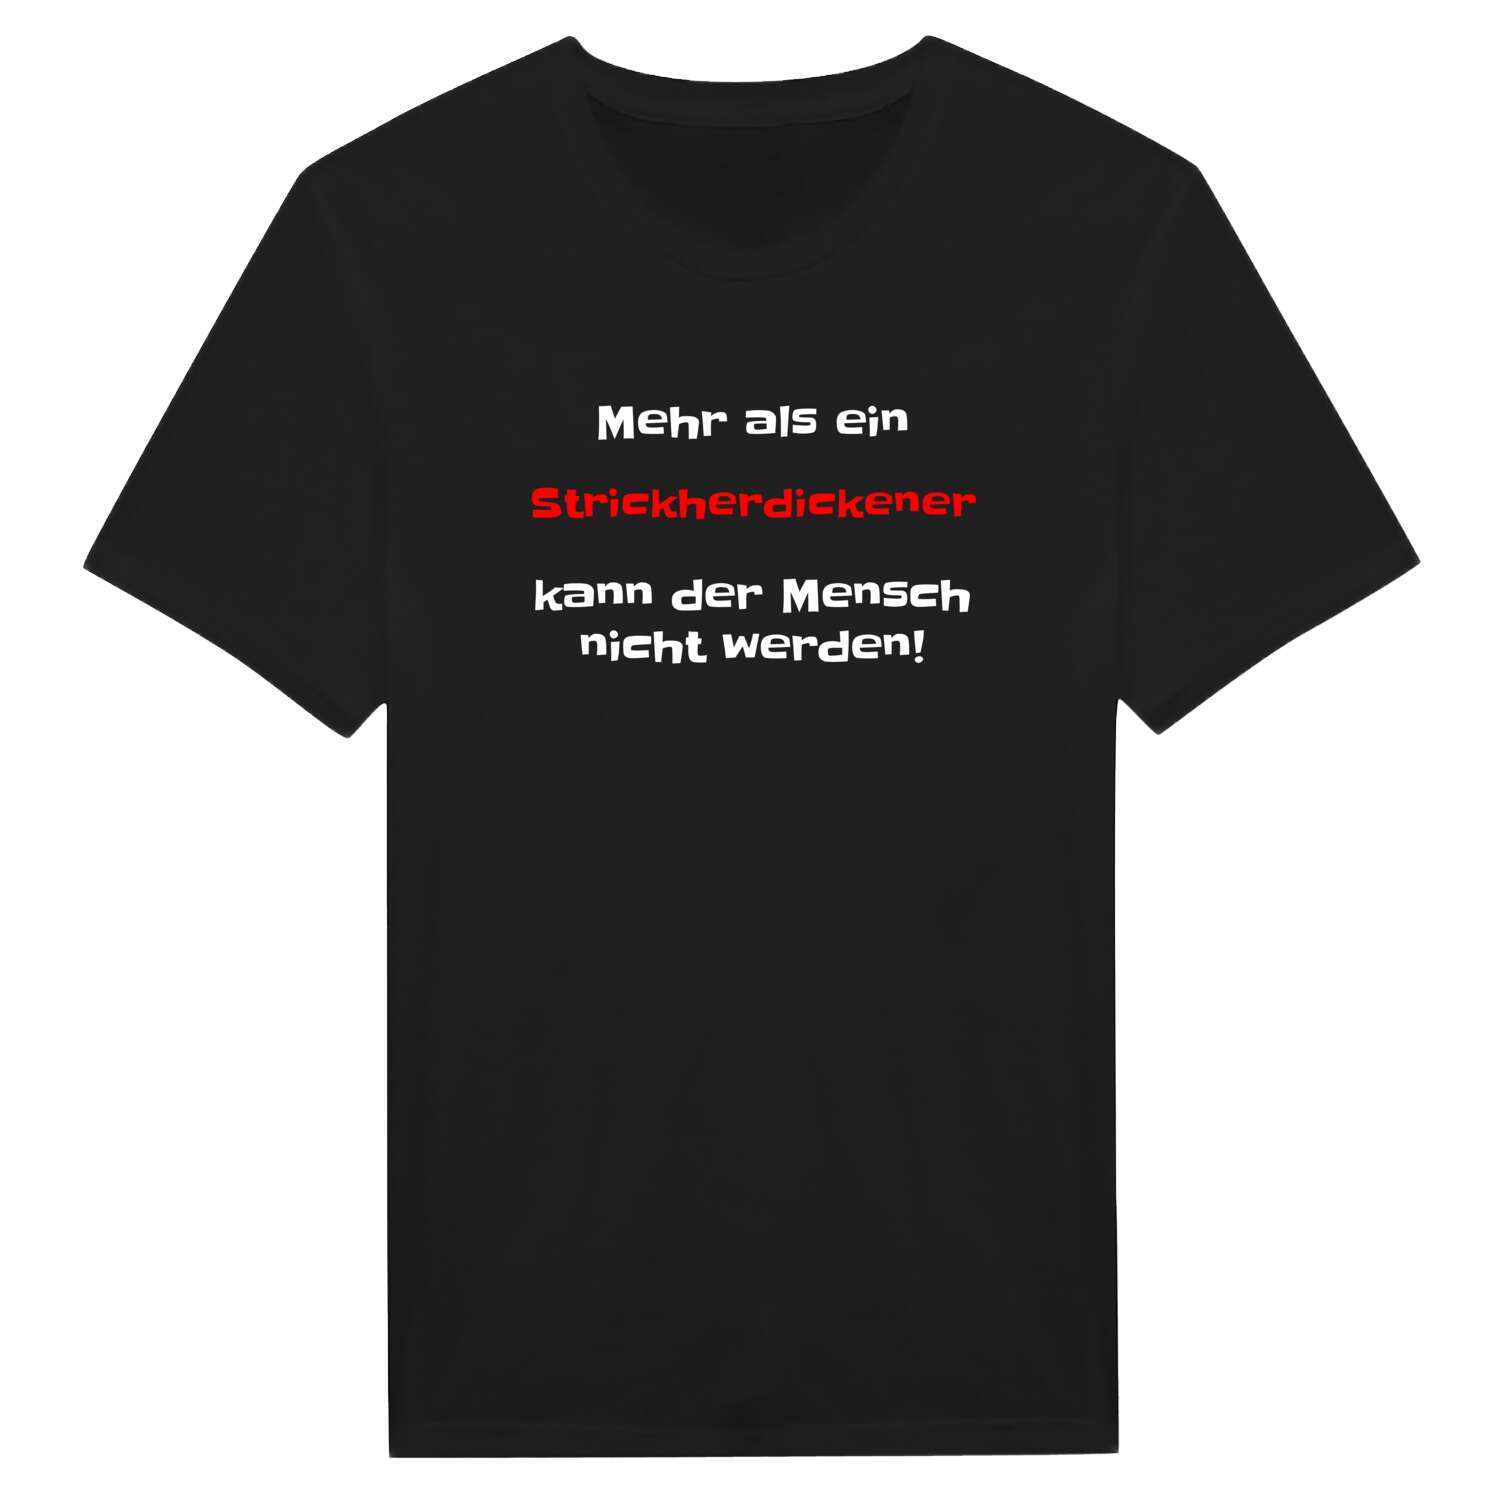 Strickherdicke T-Shirt »Mehr als ein«